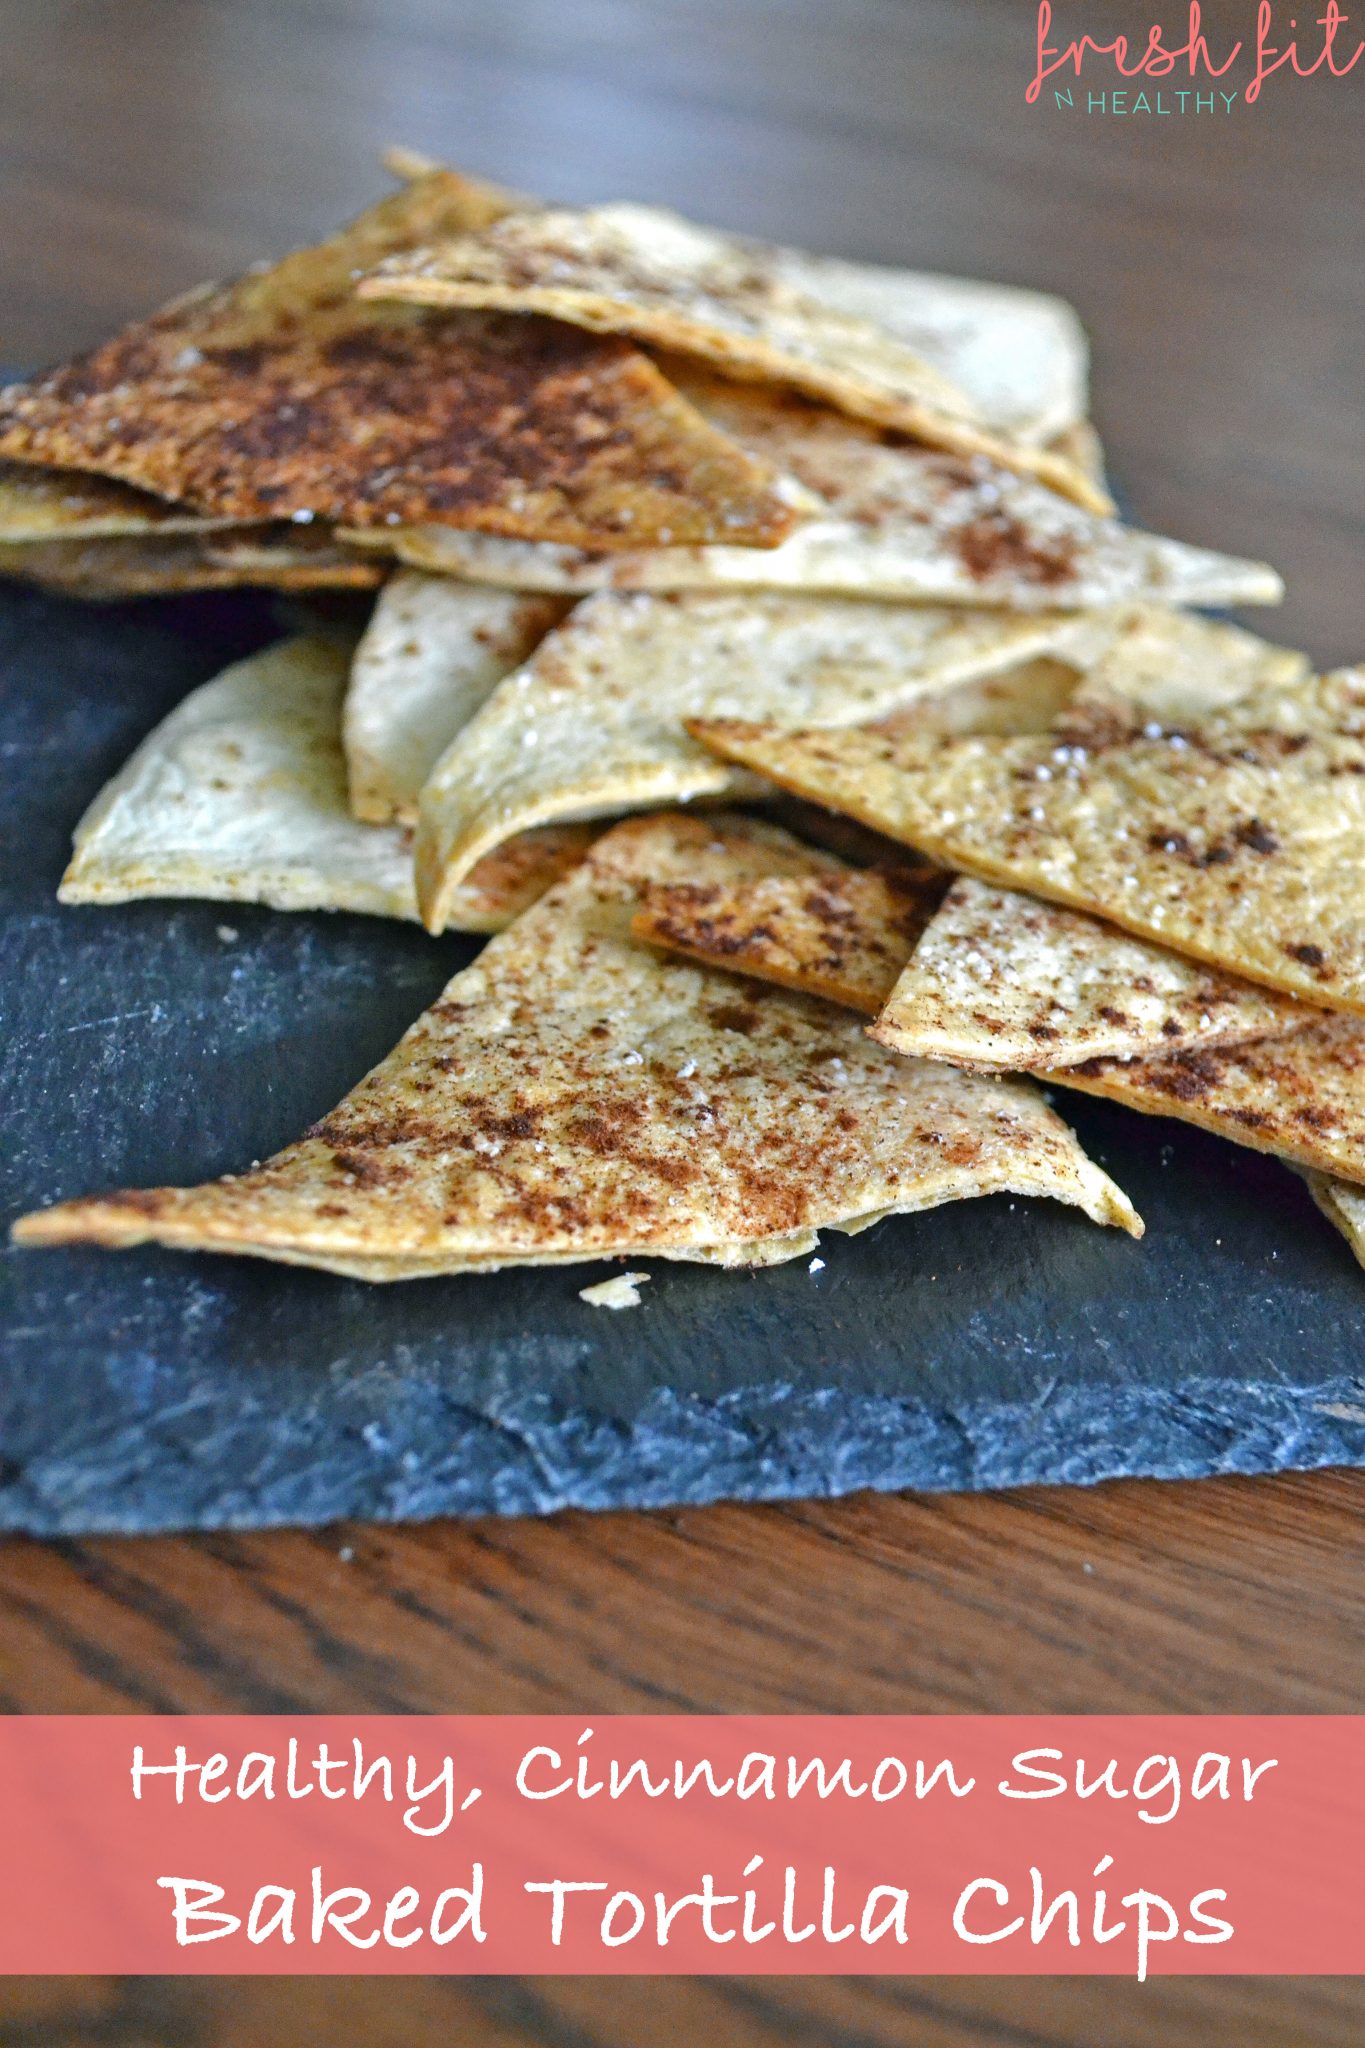 Cinnamon Sugar Healthy Tortilla Chips Fresh Fit N Healthy